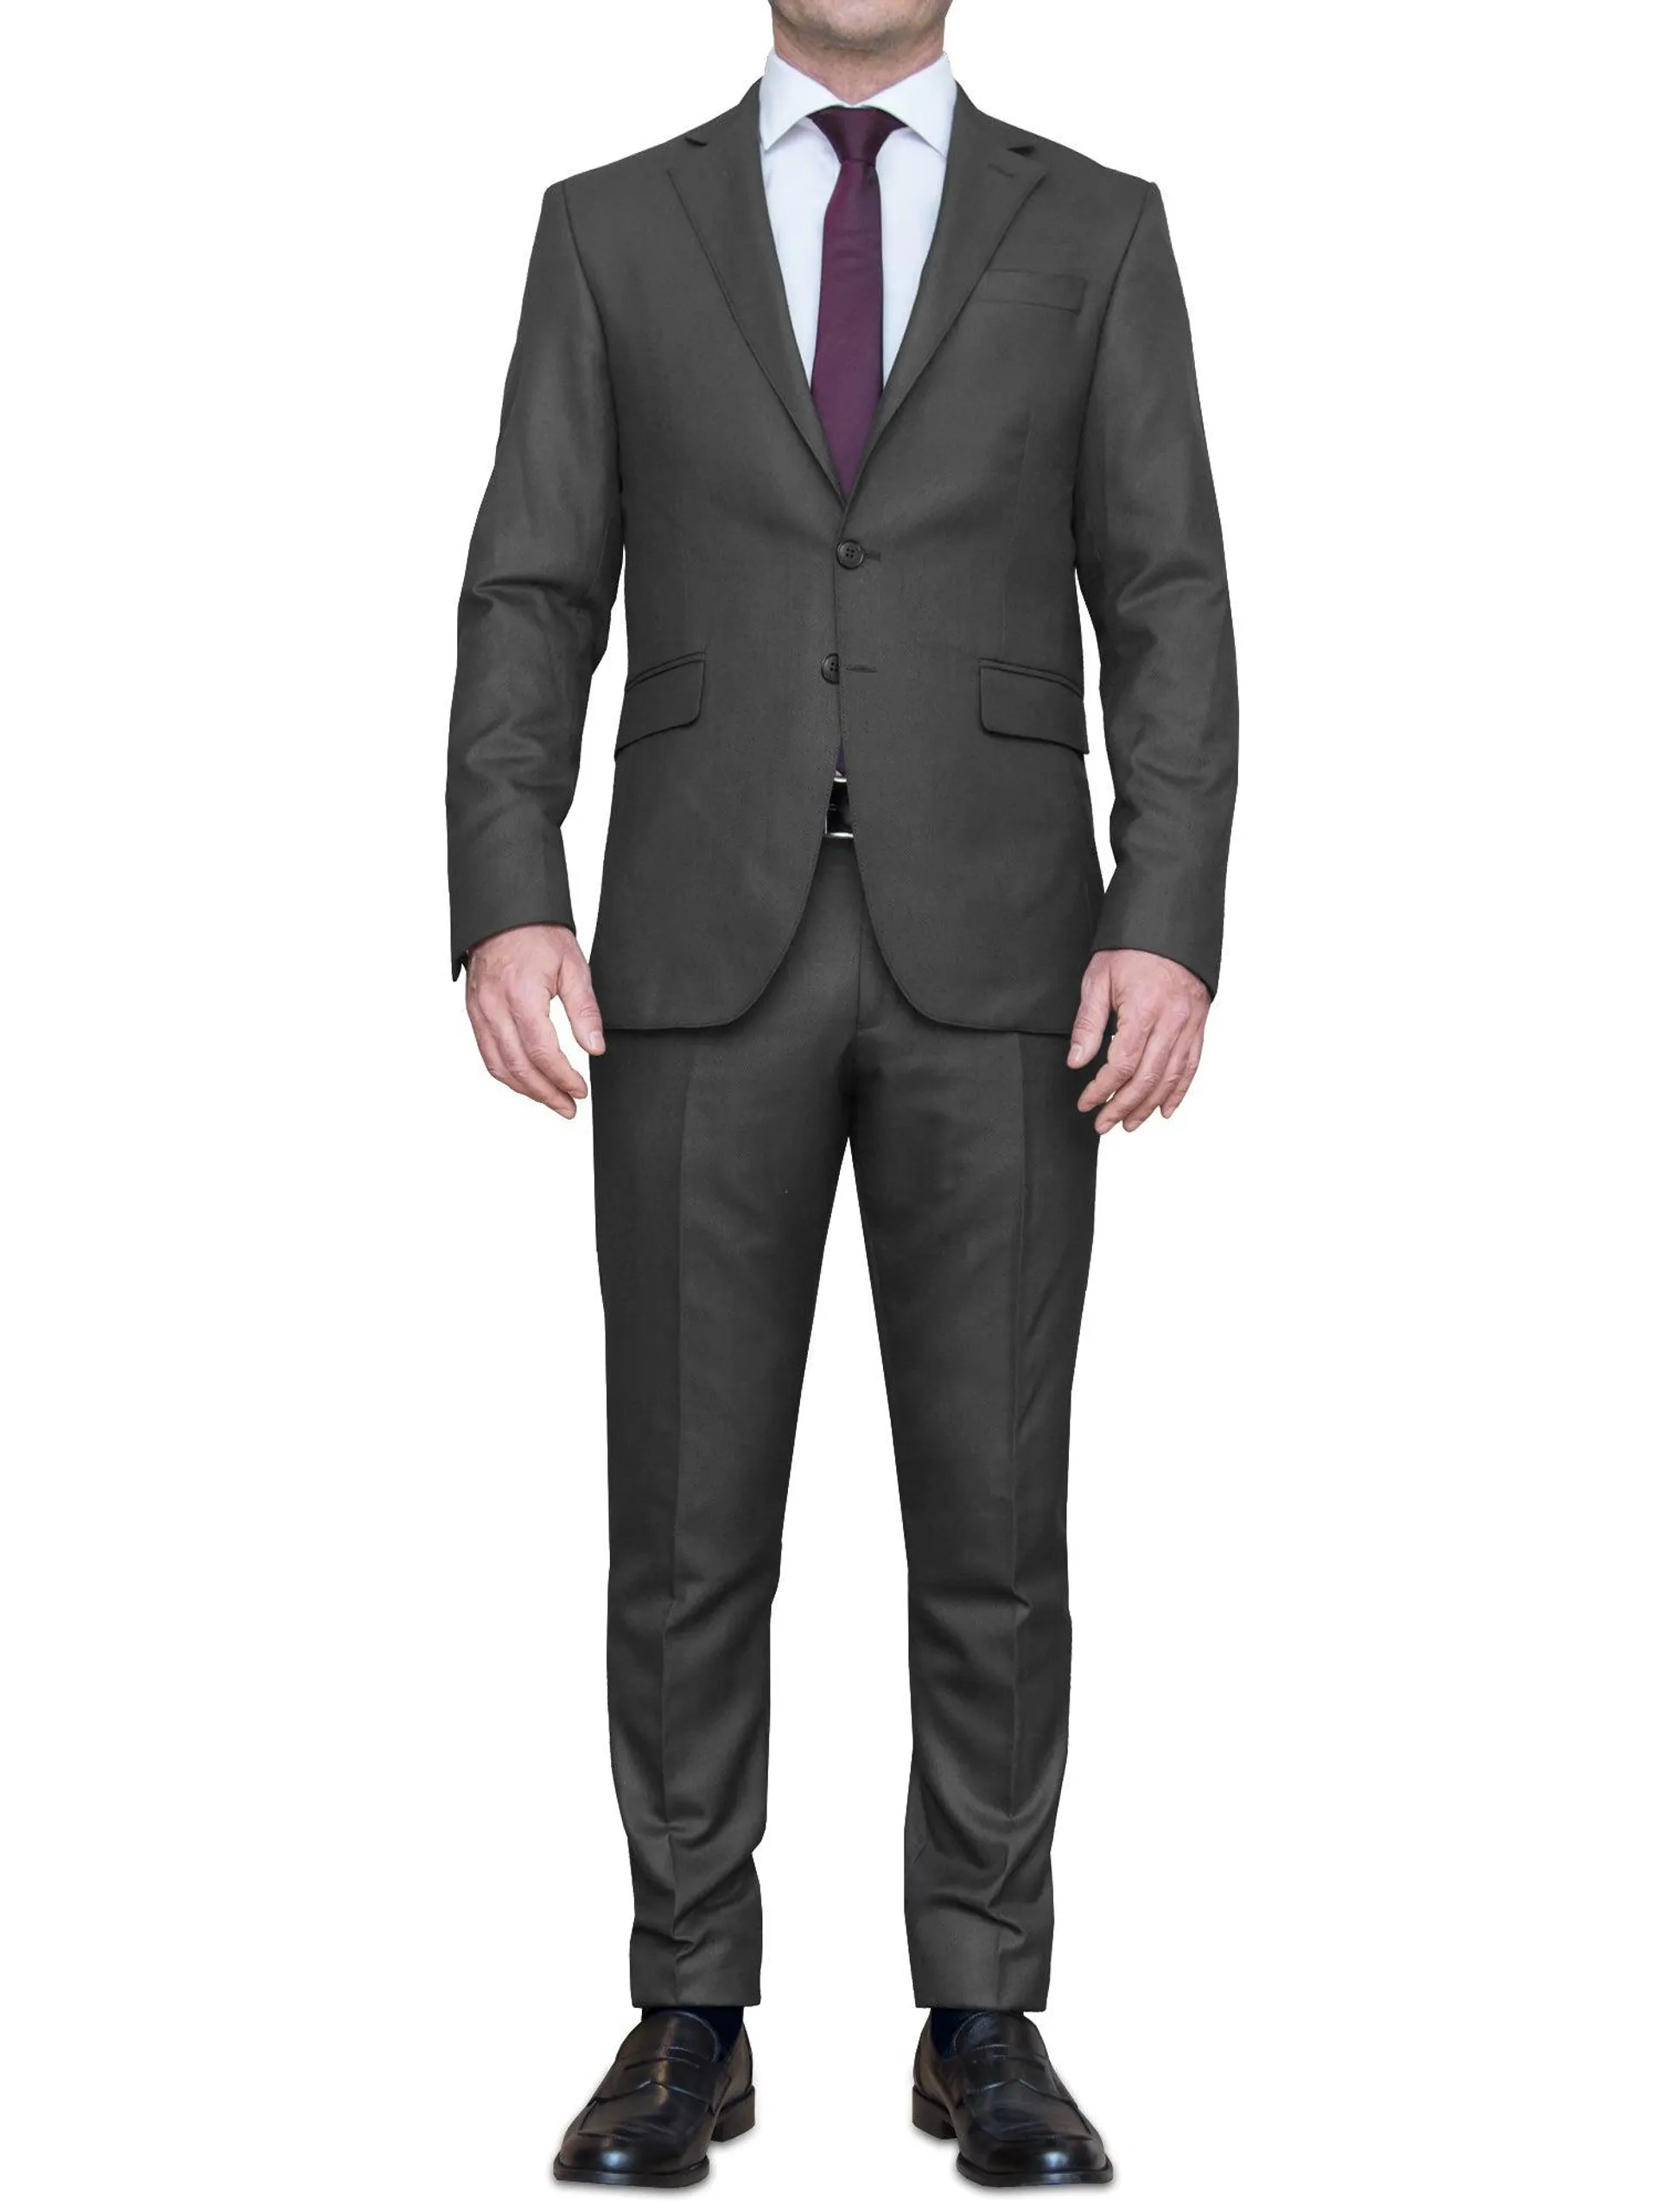 Polyviscose Man Suit Black Plain